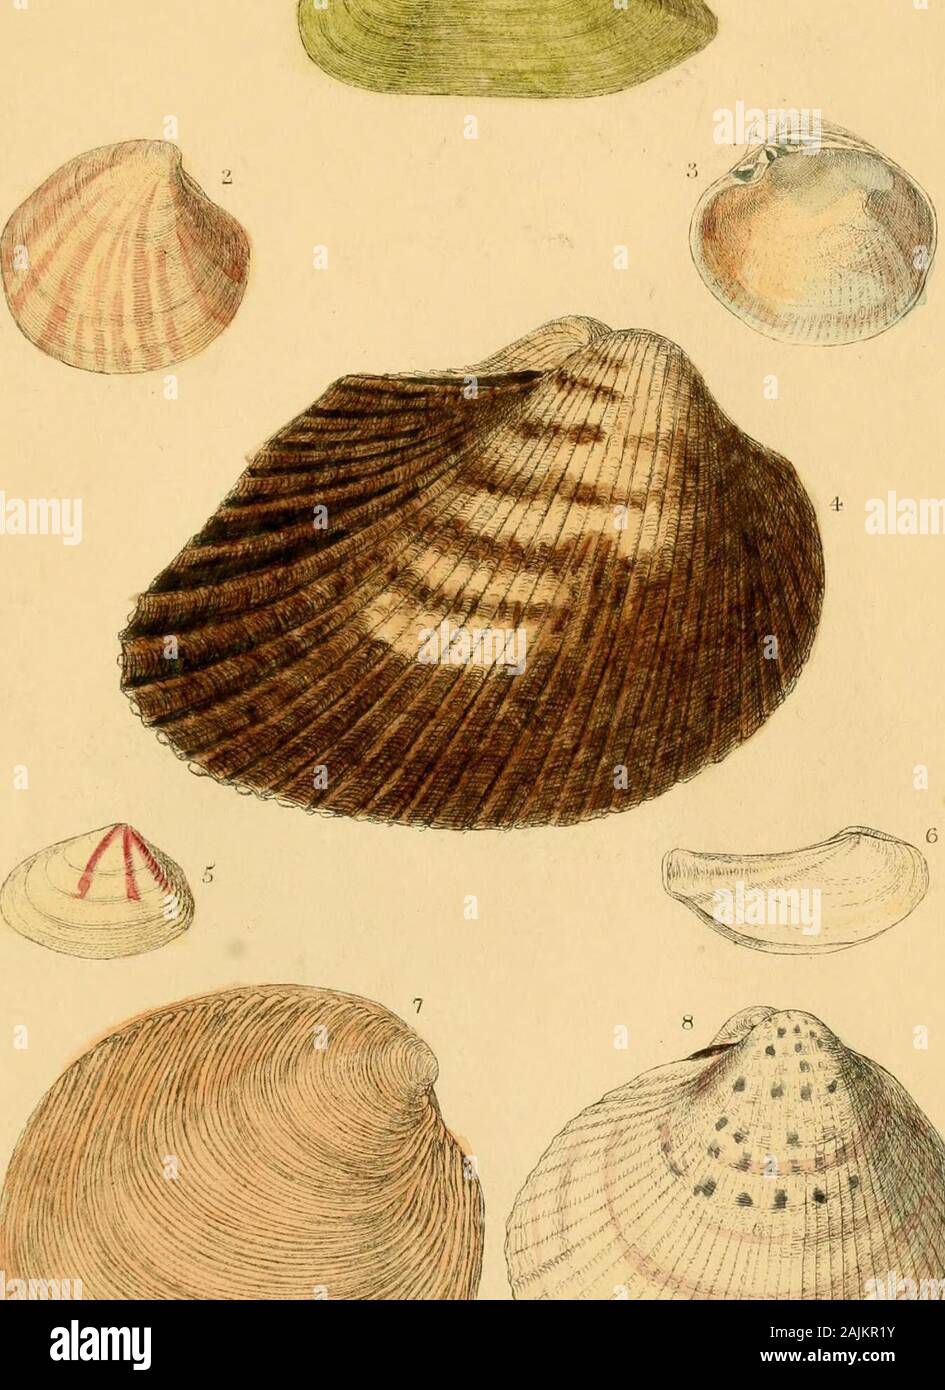 Ipsa Linnaei conchylia The shells of Linnaeus, determined from his manuscripts and collection . capha. 5. Telliua trifasciata. 6. Tellina insequivalvis. 7. Venus prostrata. 8. Cardium Isevigatum. PLATE II. 1. Mytilus anatinus. 2. Mytilus barbatus. 3. Mactra striatula. 4. Mytilus ungulatus. 5. Buccinum prajrosura. 6. Murex cariosus. 7. Ostrea perna. 8. Mactra stultorum. PLATE III. 1. Turbo acutangulus. 3. Turbo imbricatus. 3. Turbo variegatus. 4. Patella unguis. 5. Nerita glauciua of the Si/de- ma.G. Turbo obtusatus.7. Trochus maculatus. Fig. 8. Nerita glaucina of the Fauna Suecica. PLATE IV. I Stock Photo